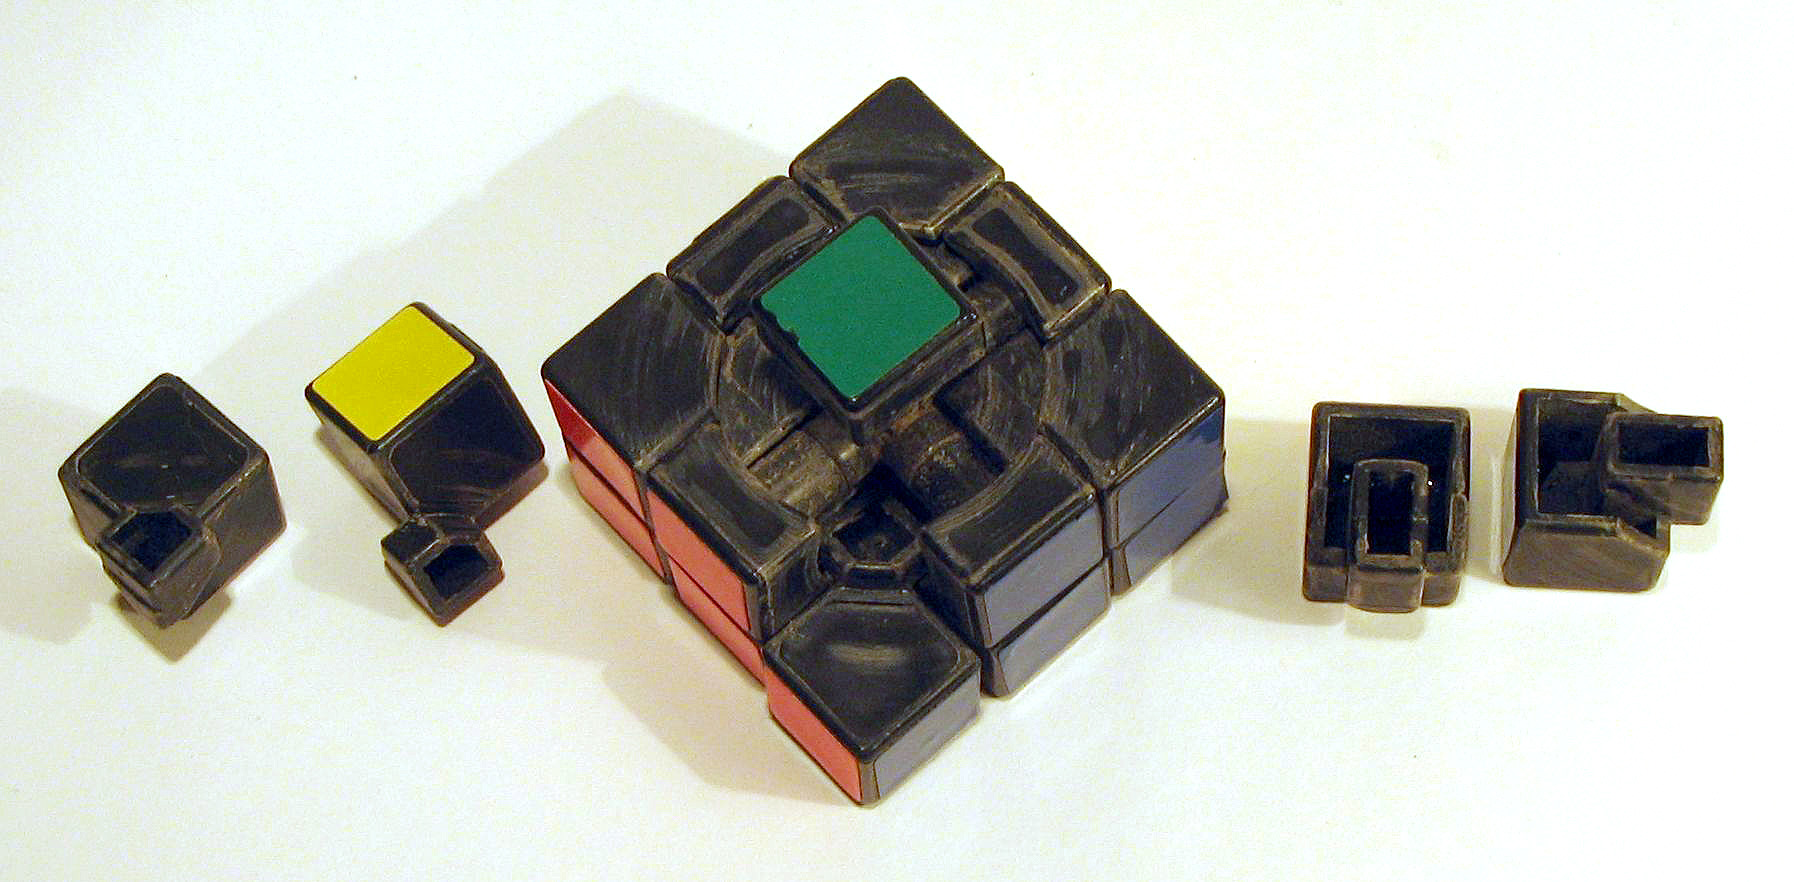 «Мой куб — наглядная модель многогранности и вариативности нашего мира, огромное количество потенциальных конфигураций», — Эрнё Рубик, создатель самой известной головоломки в мире